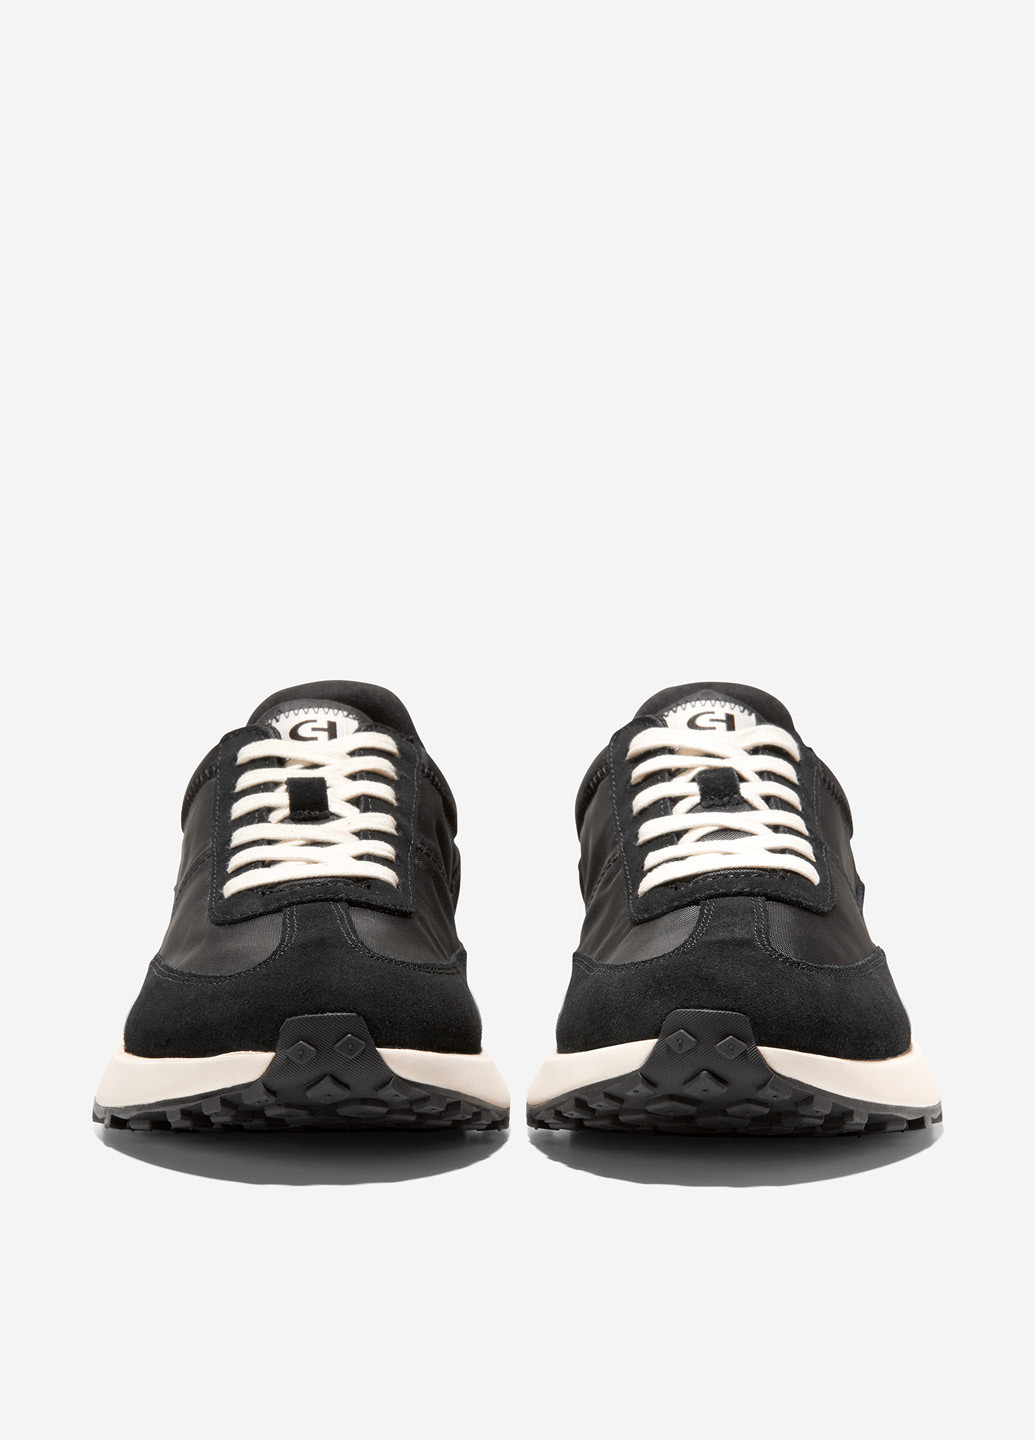 Черные демисезонные кроссовки s Cole Haan Grand Crosscourt Midtown Sneaker